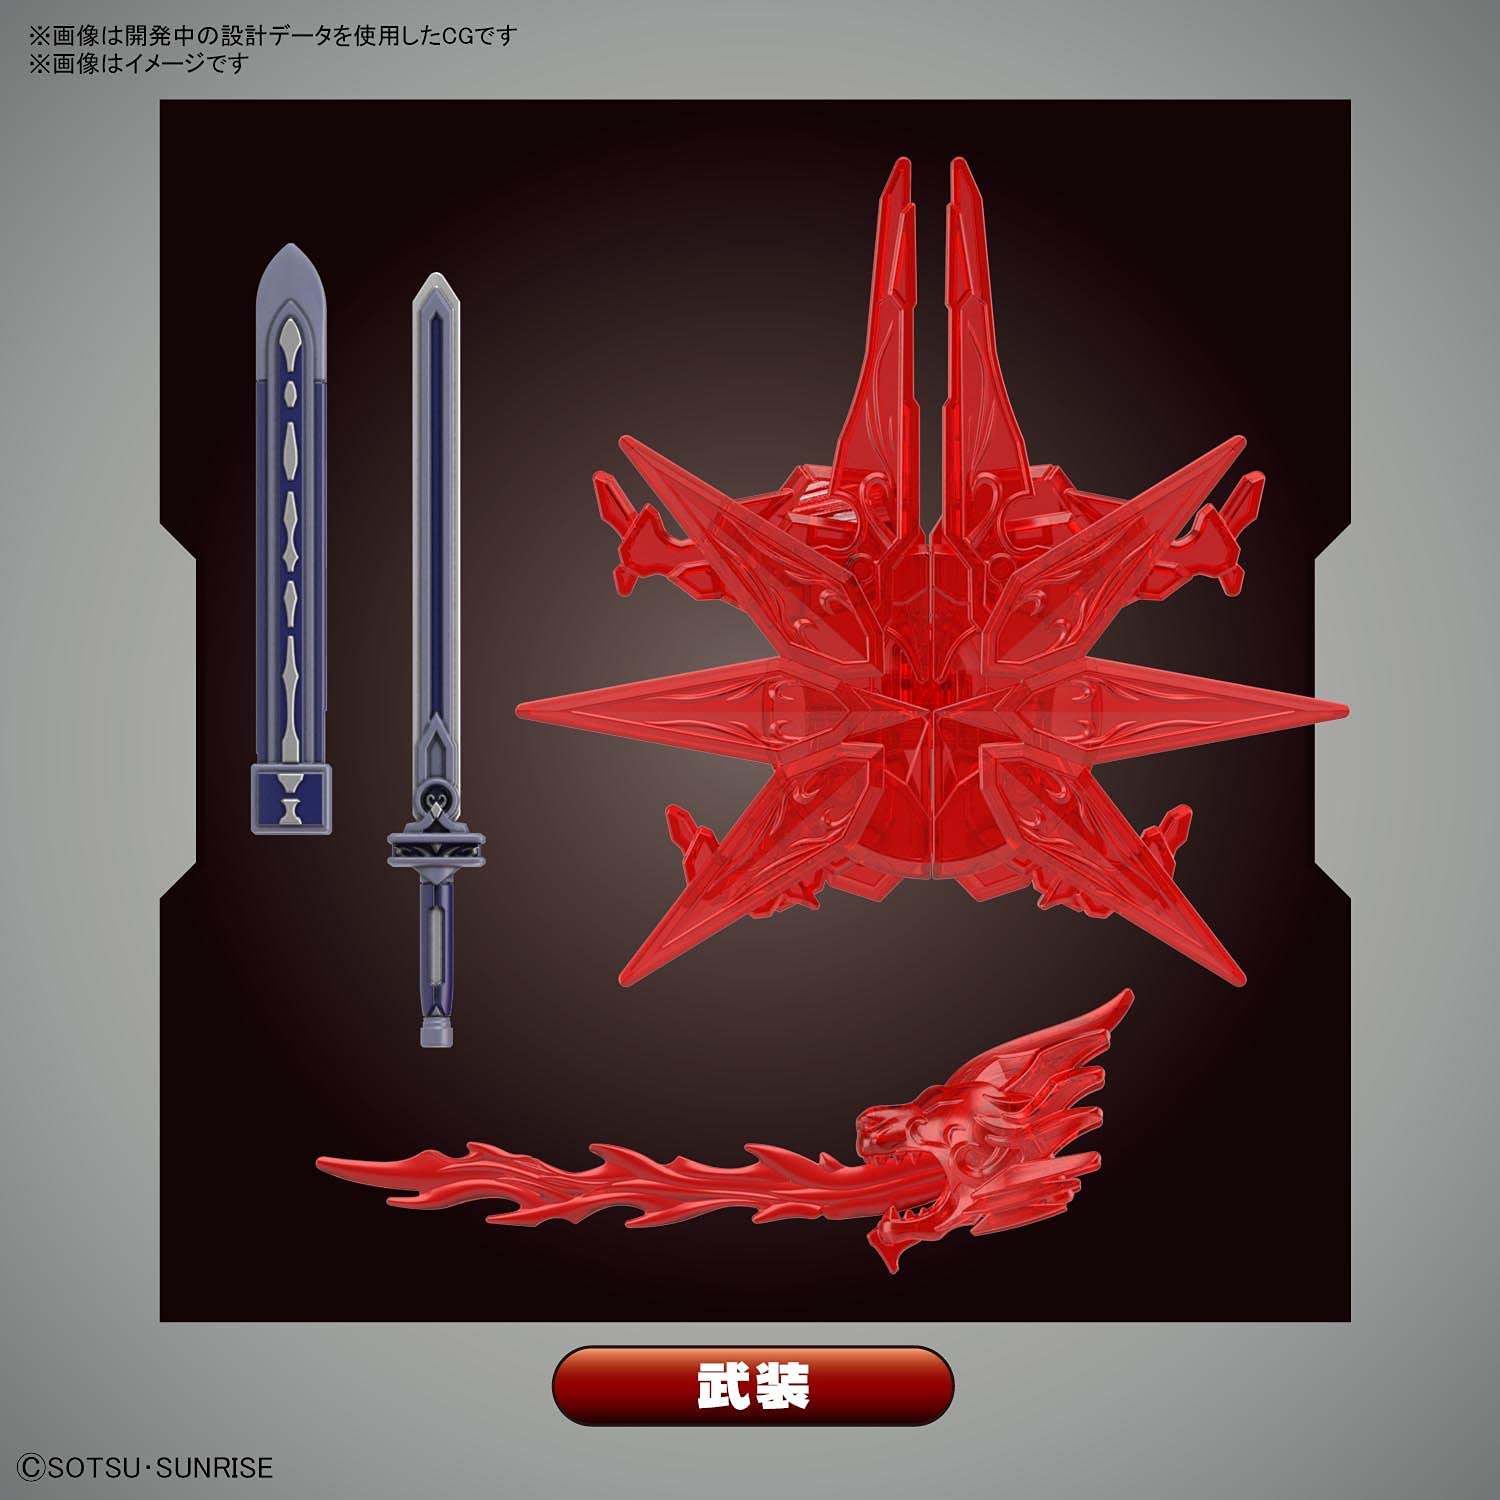 BANDAI SPIRITS SDW HEROES Scissor Legend Gundam Color Coded